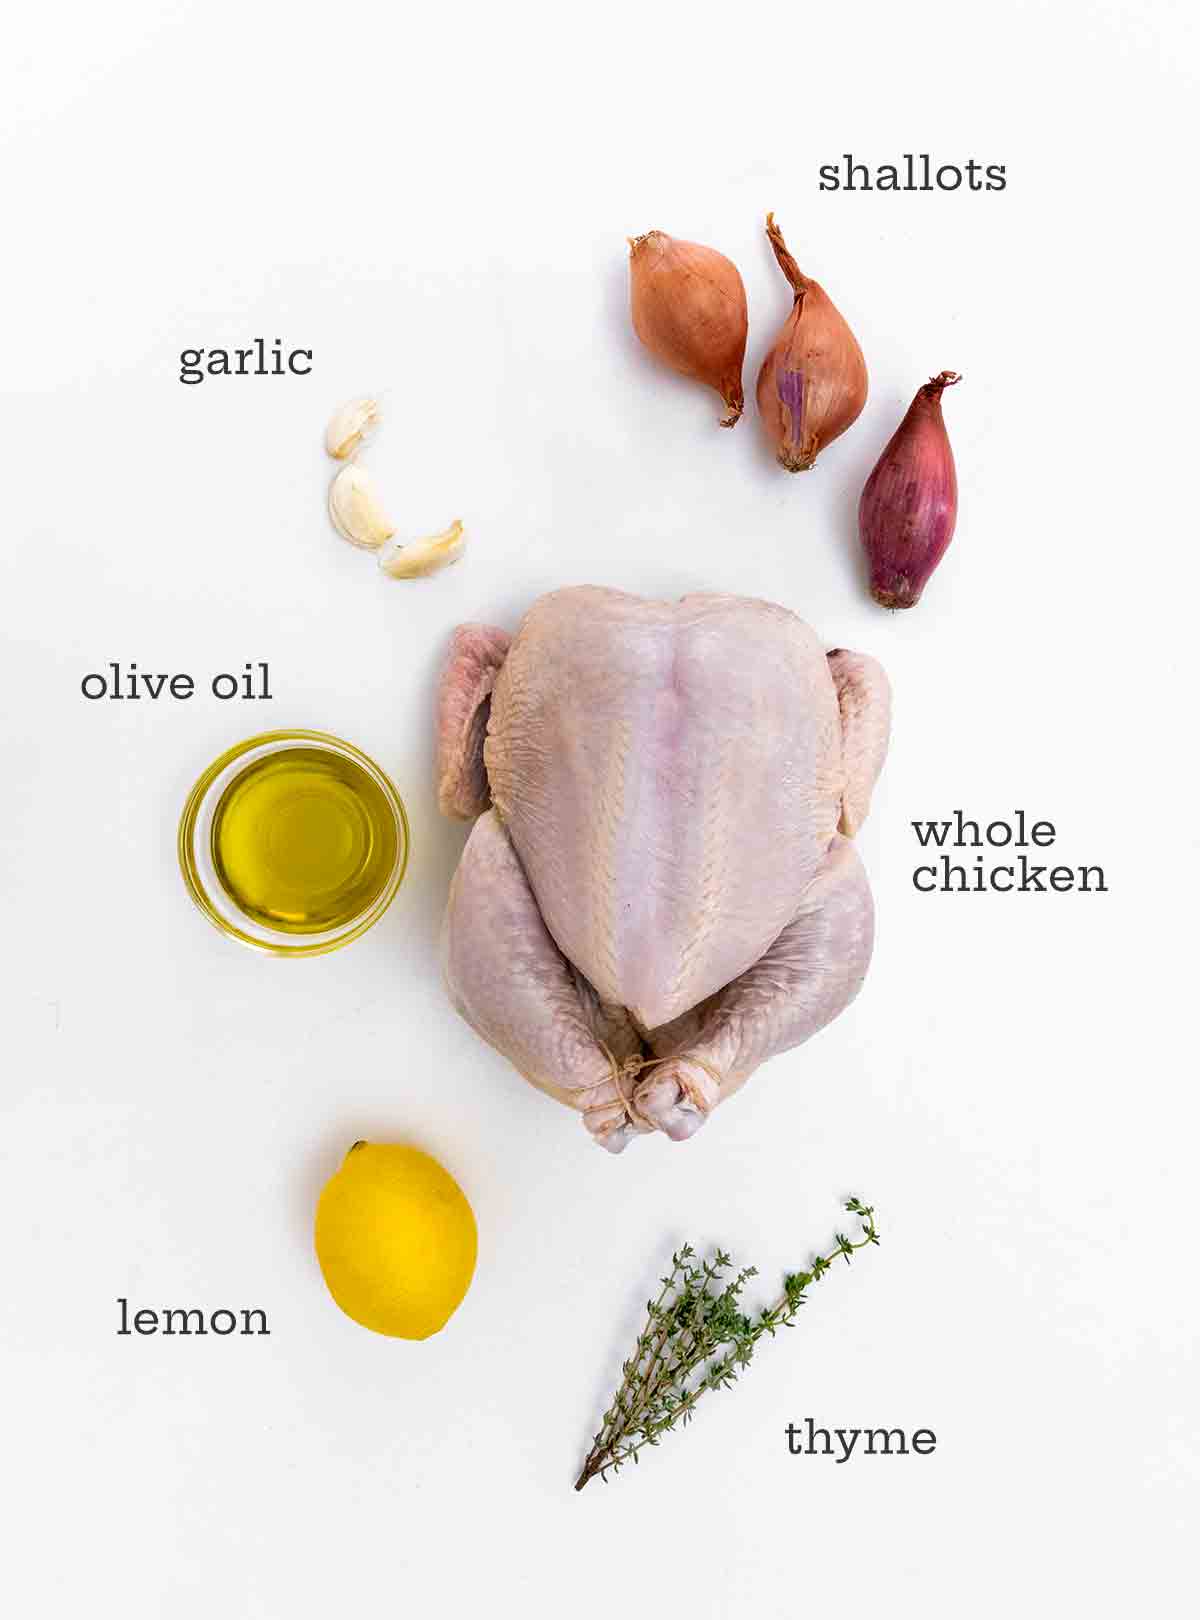 En hel kyckling, schalottenlök, vitlöksklyftor, olivolja, en citron och lite timjan på en vit bakgrund.